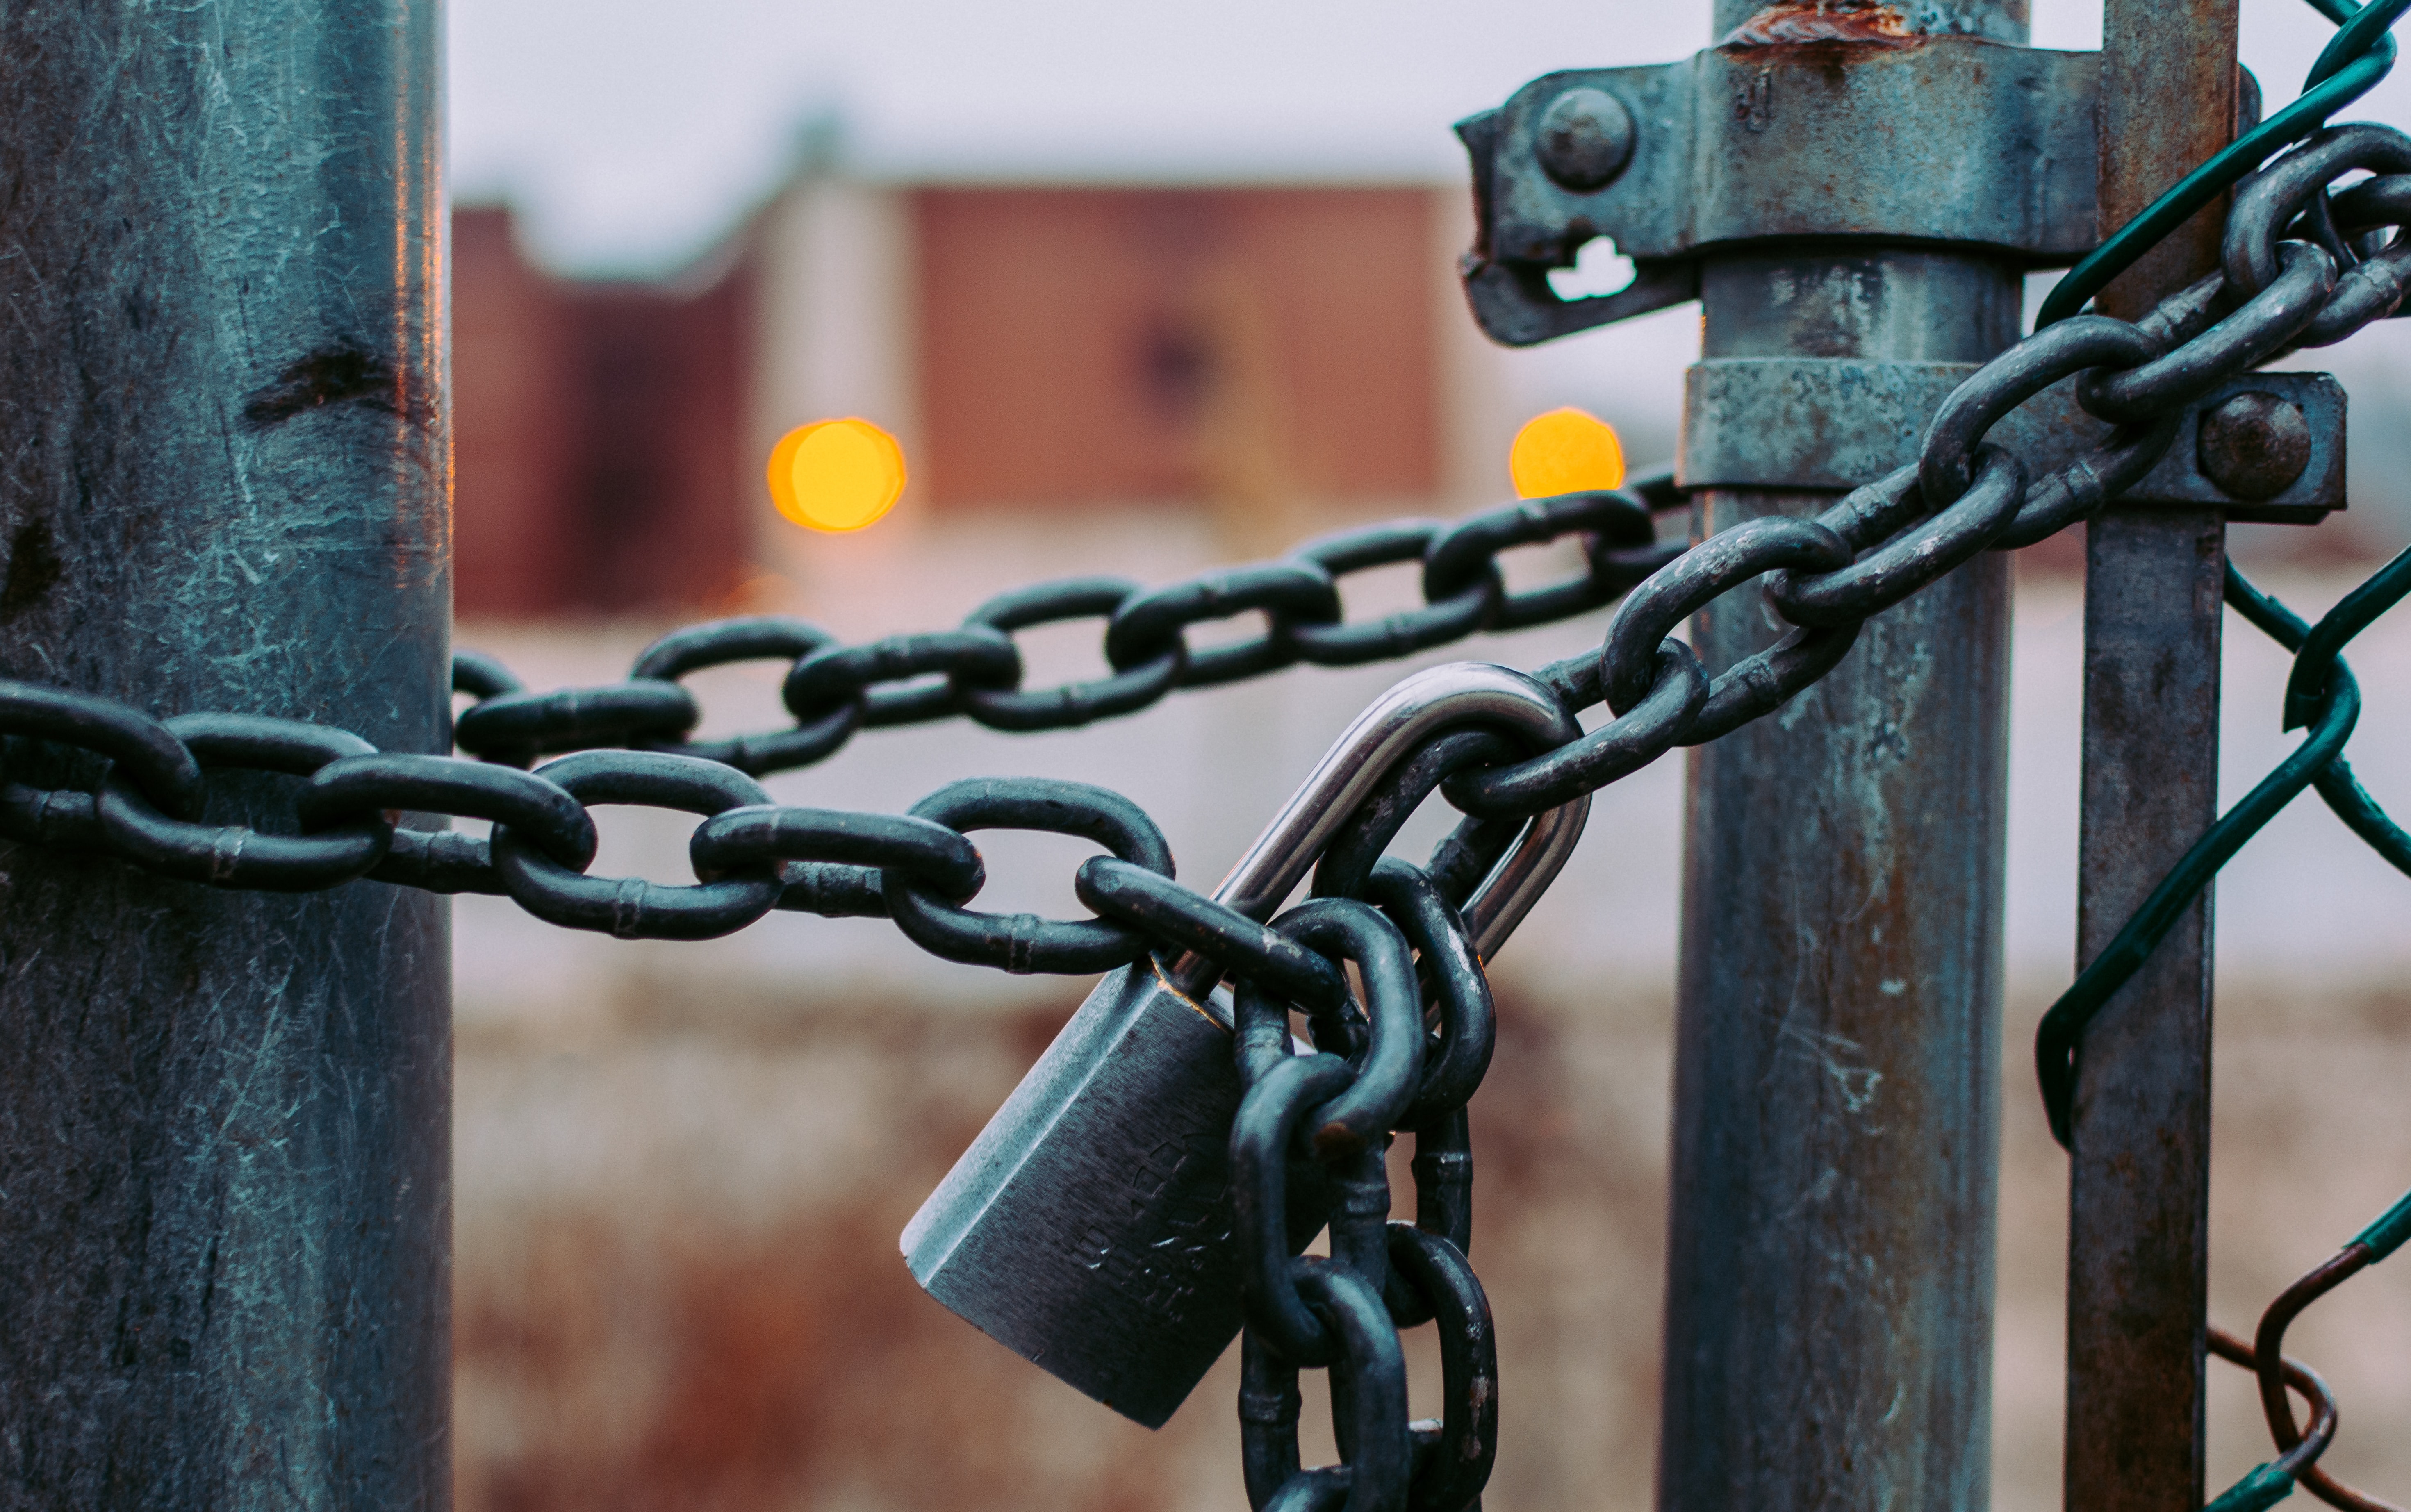 Selesch Schlüsseldienst Locking – if you already suspect trouble